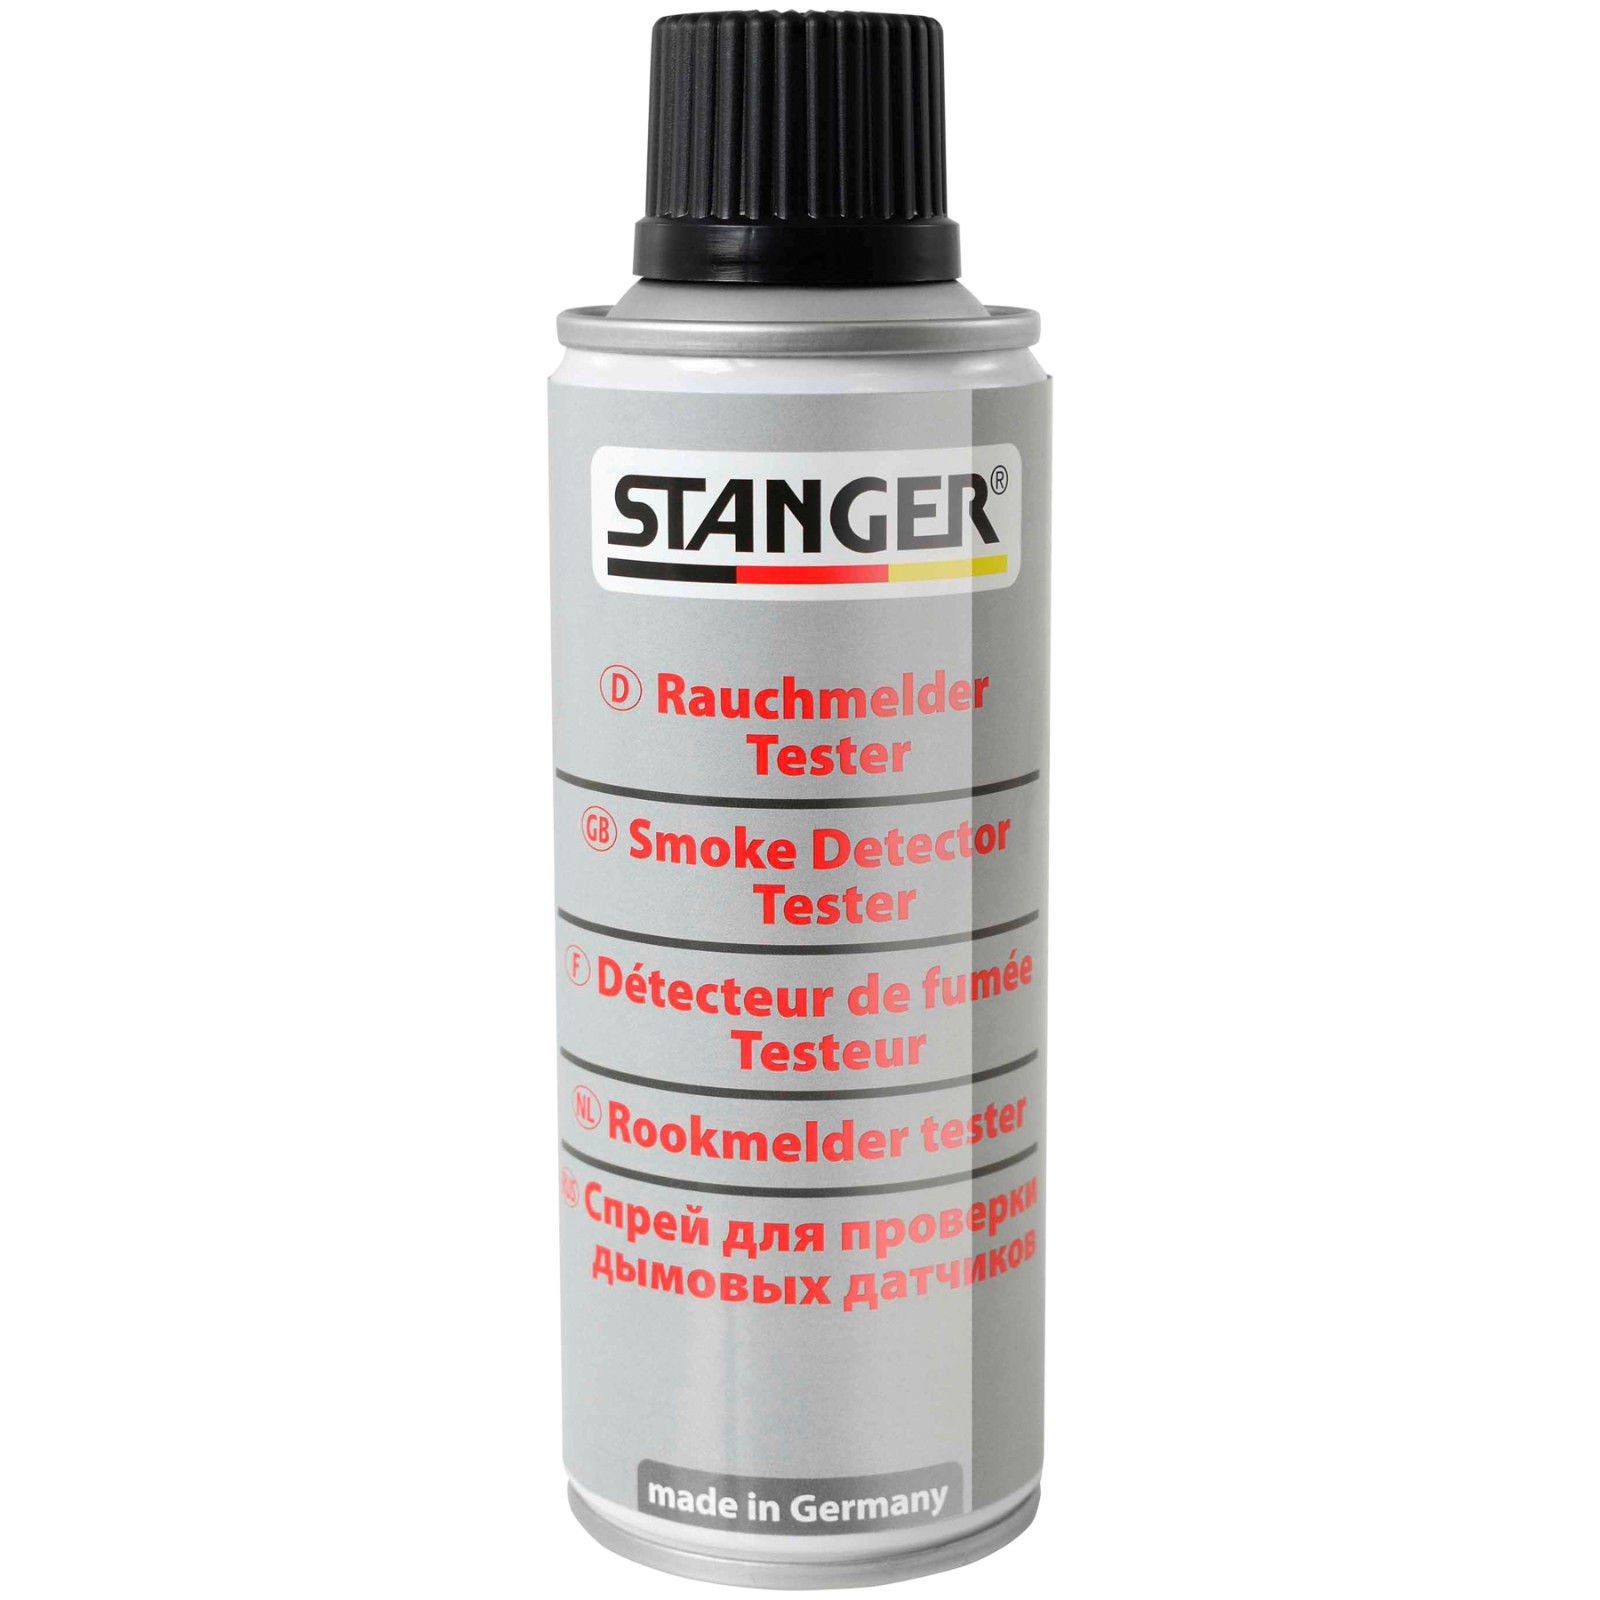 Spray testeur pour détecteur de fumée - 150 ml